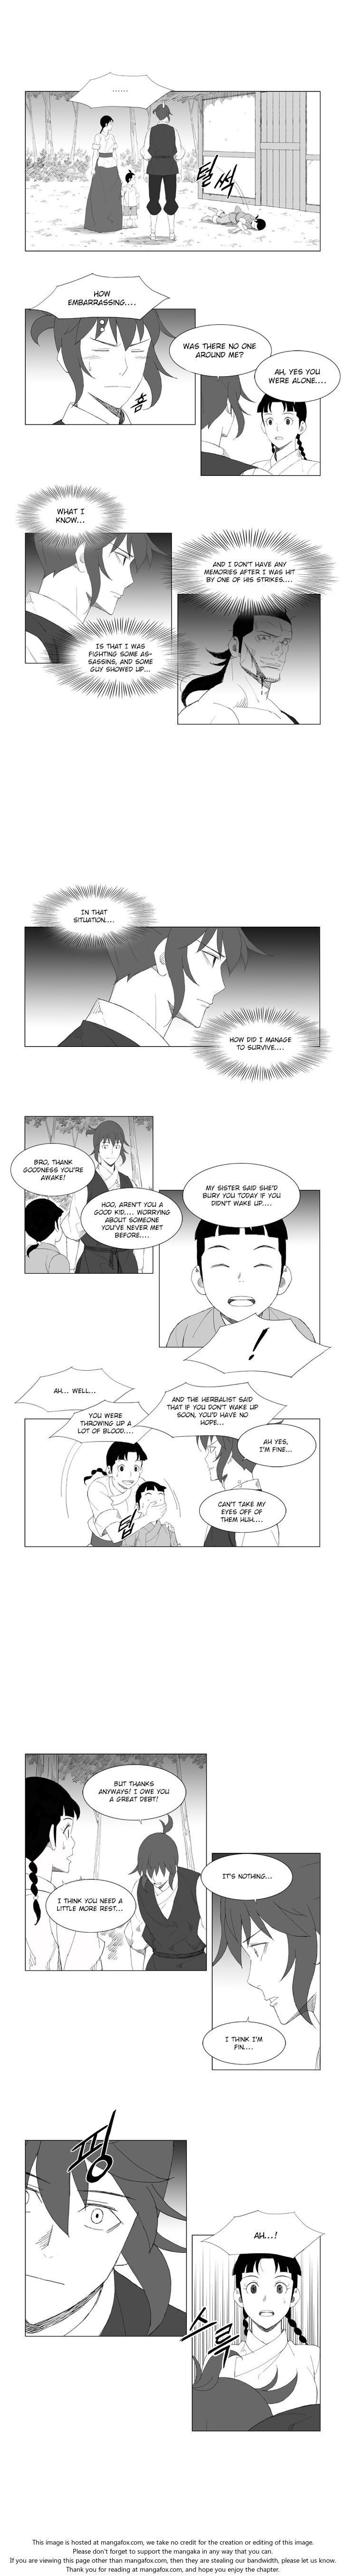 Mujang Chapter 085 page 4